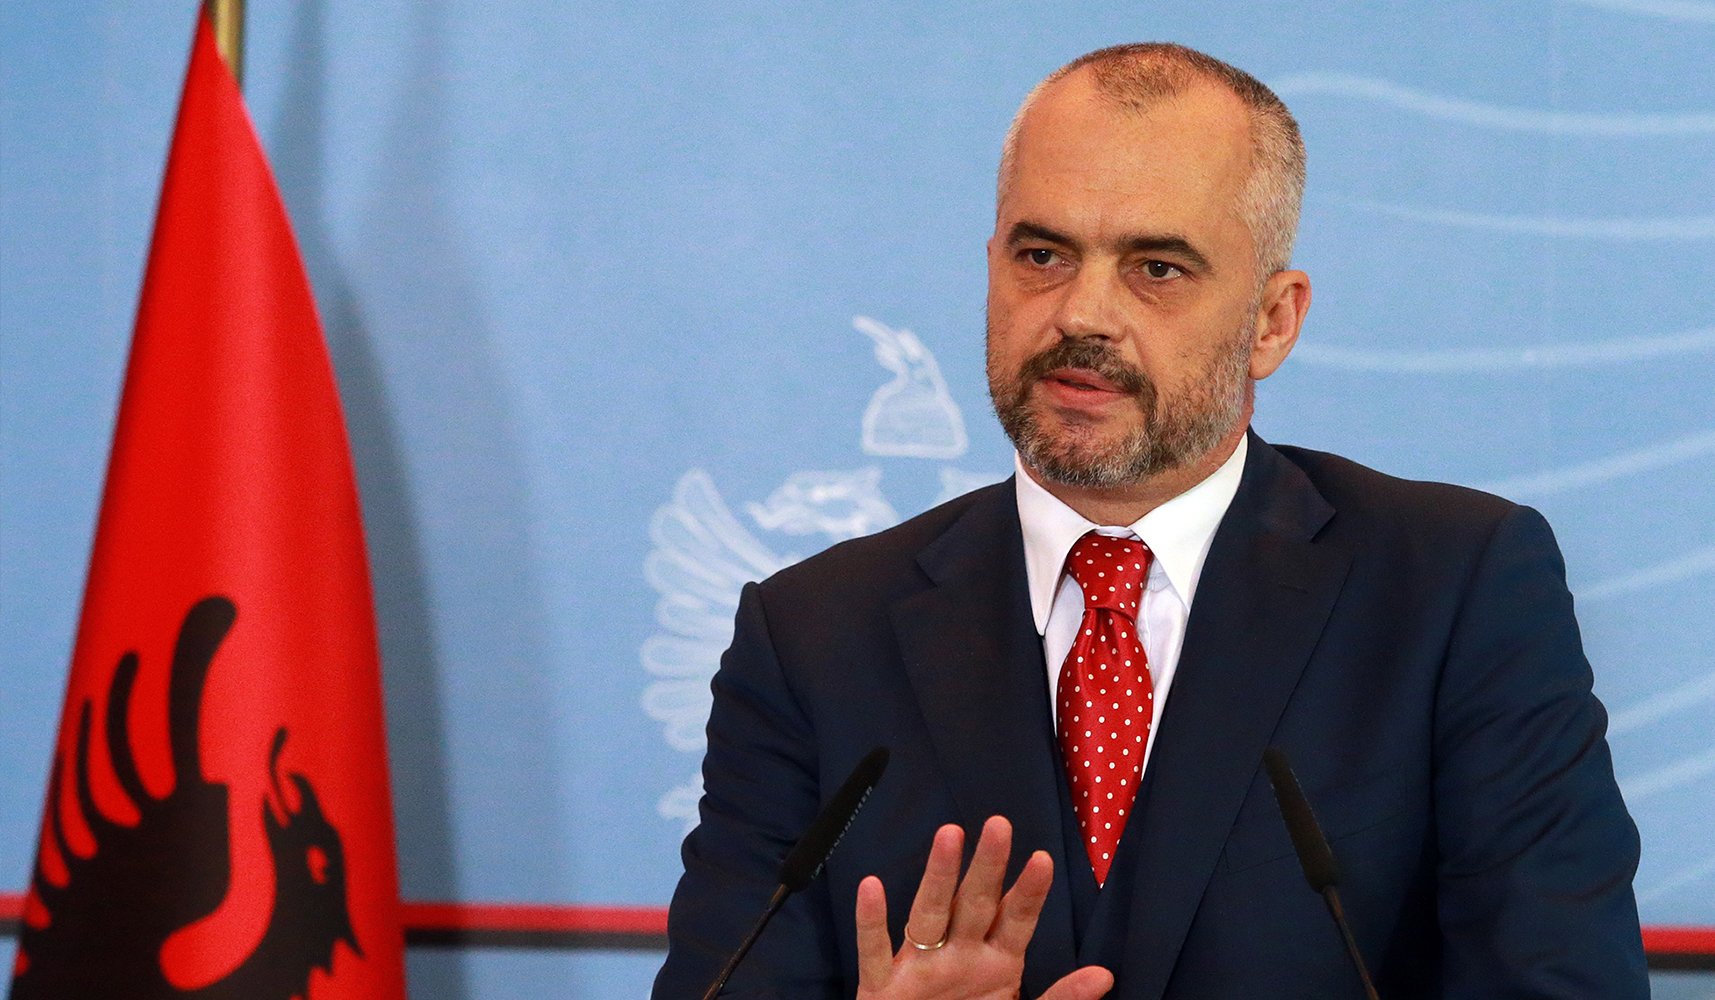 Δήλωση - πρόκληση του Αλβανού Πρωθυπουργού για τις ελληνικές έρευνες στο Ιόνιο